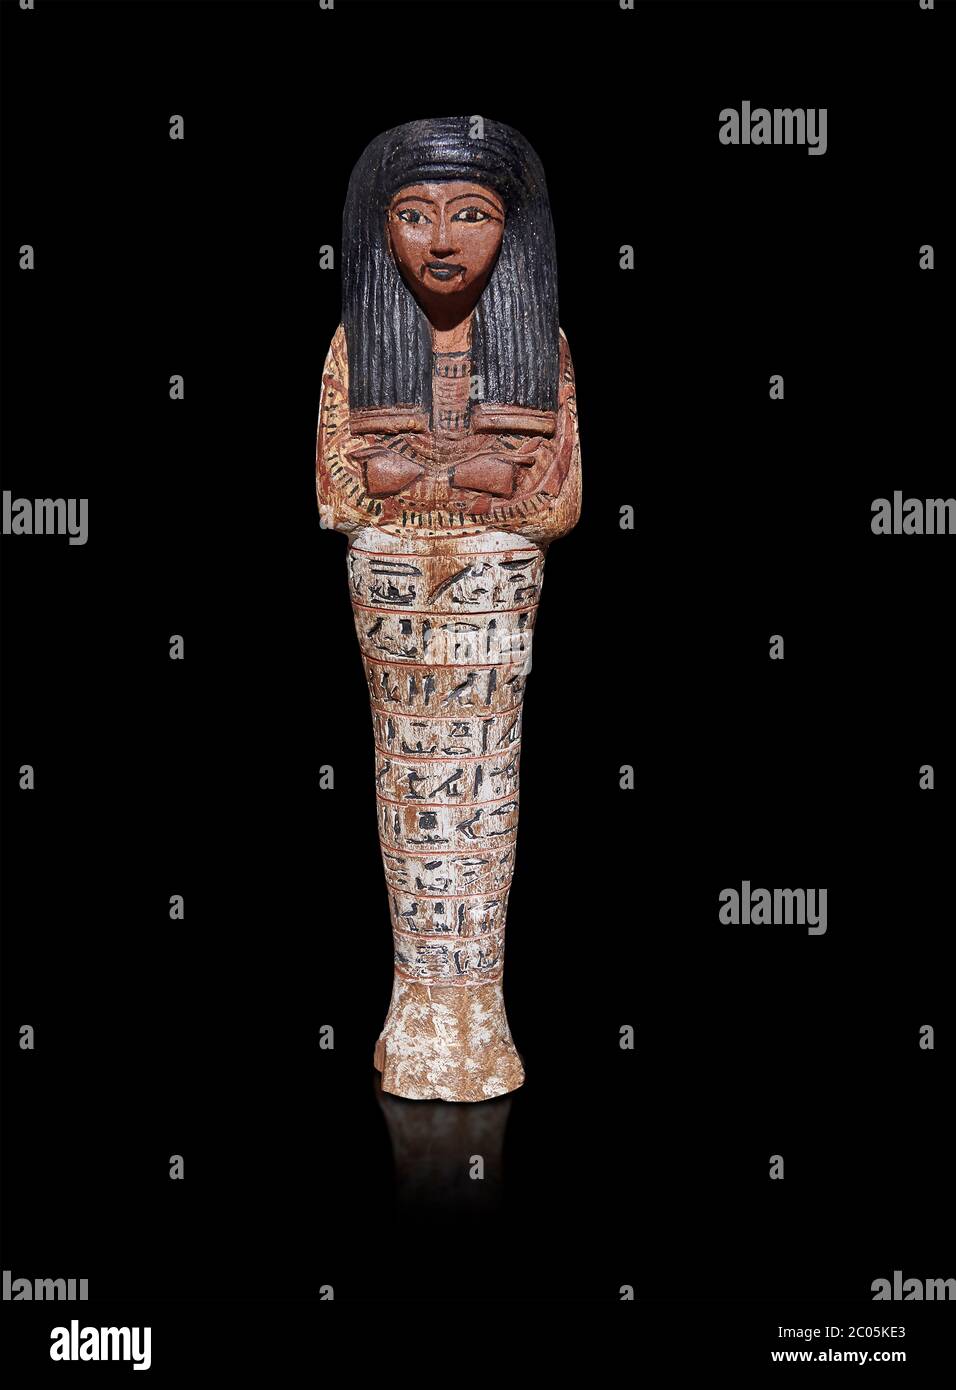 Alte ägyptische Shabtis-Puppe, Neues Königreich,. Ägyptisches Museum, Turin. Grauer Hintergrund. Stockfoto